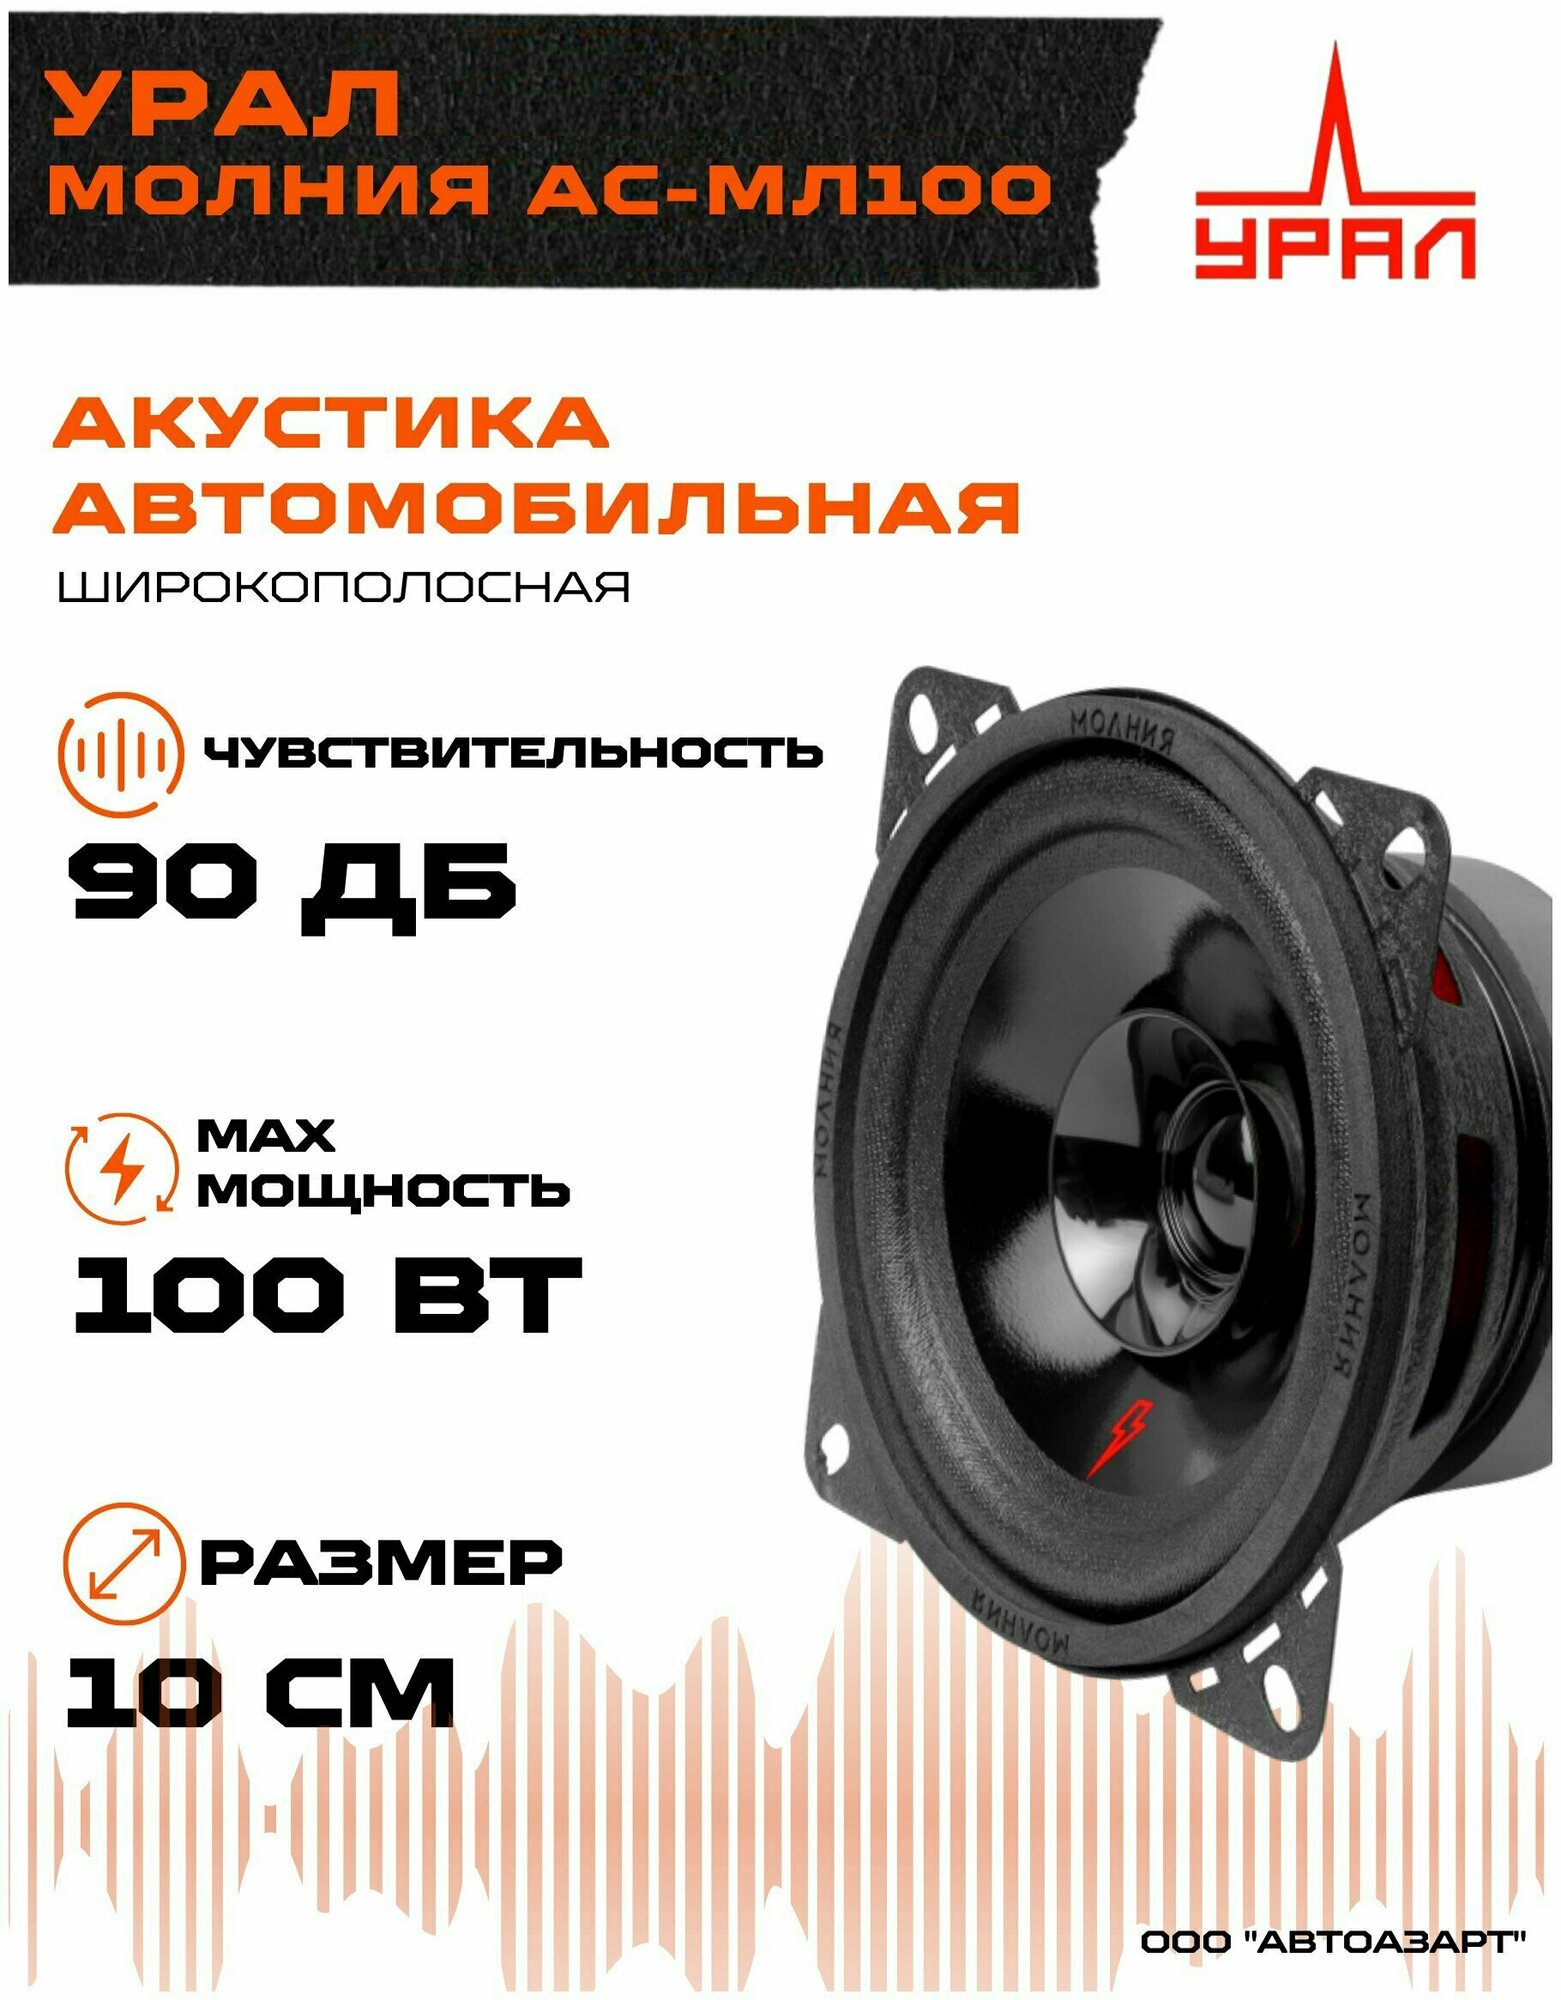 Автомобильная акустика Урал Молния АС-МЛ100 (10см) ( Громкая , широкополосная , пара)